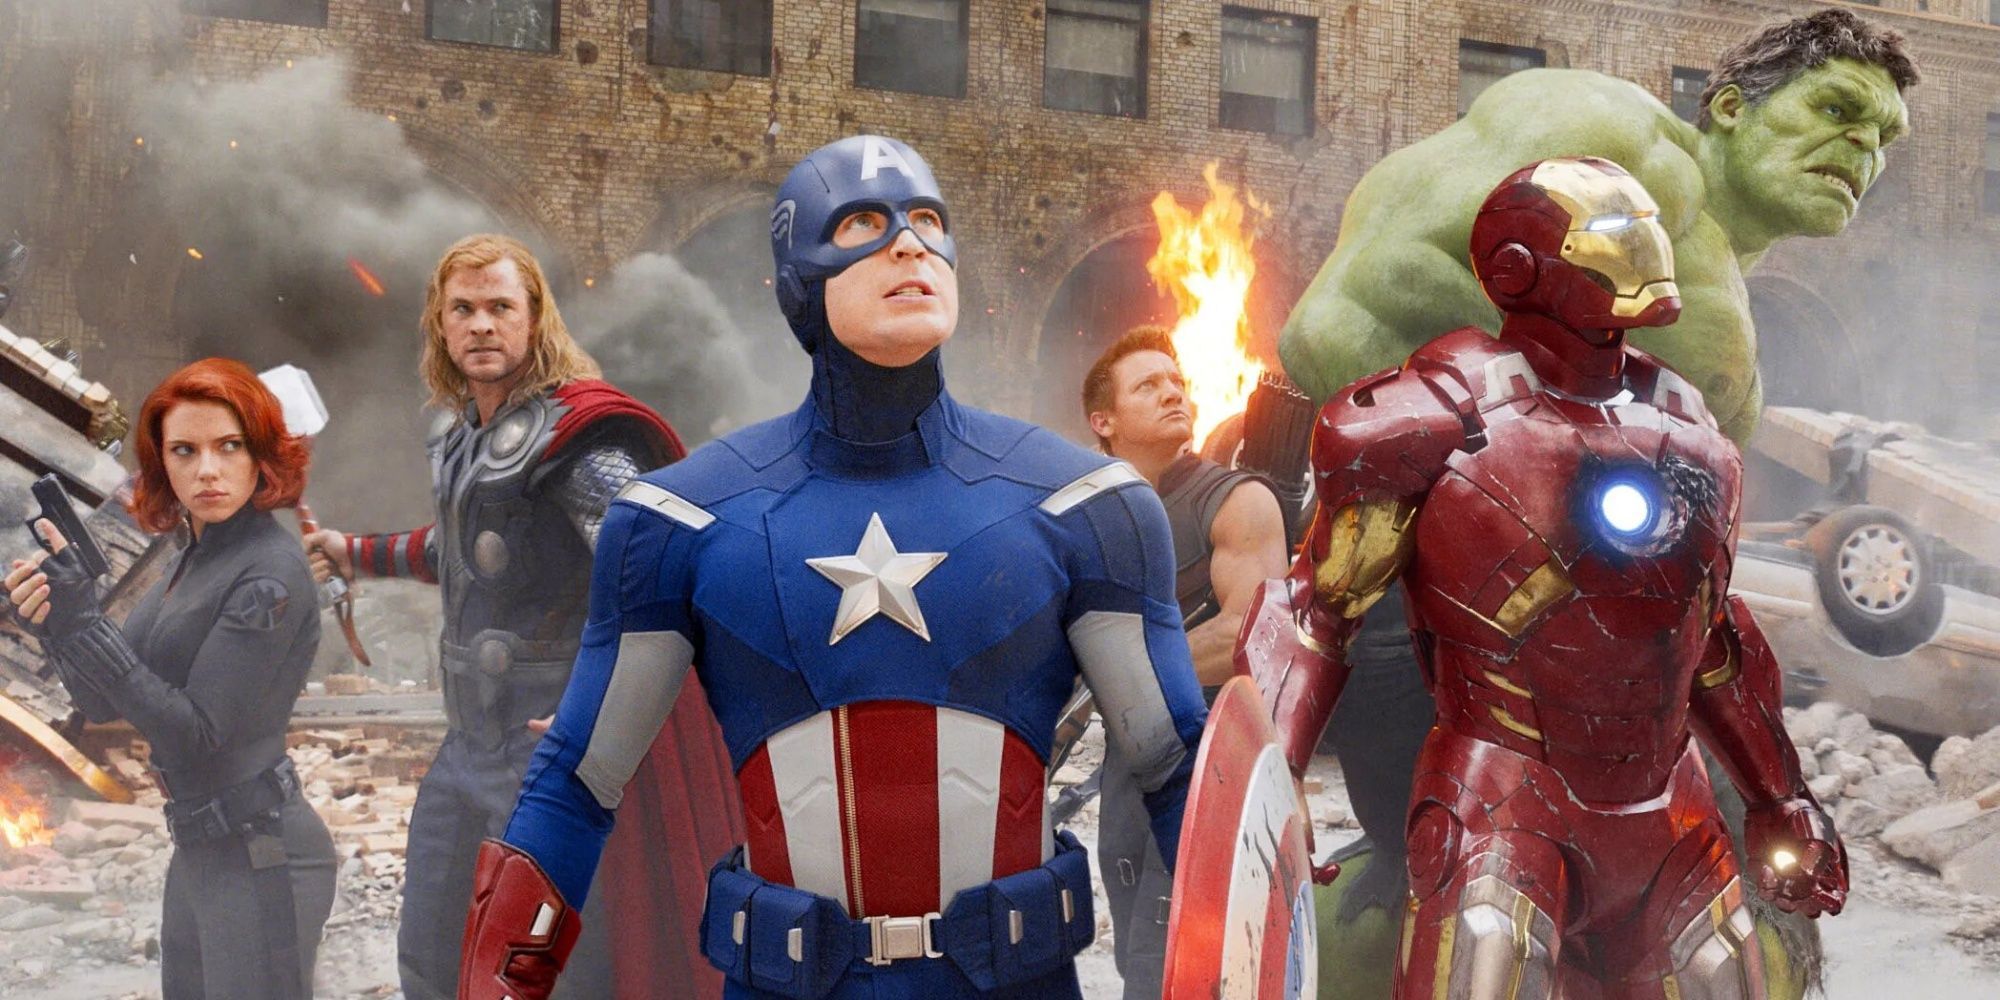 Semua Avengers berkumpul di The Avengers